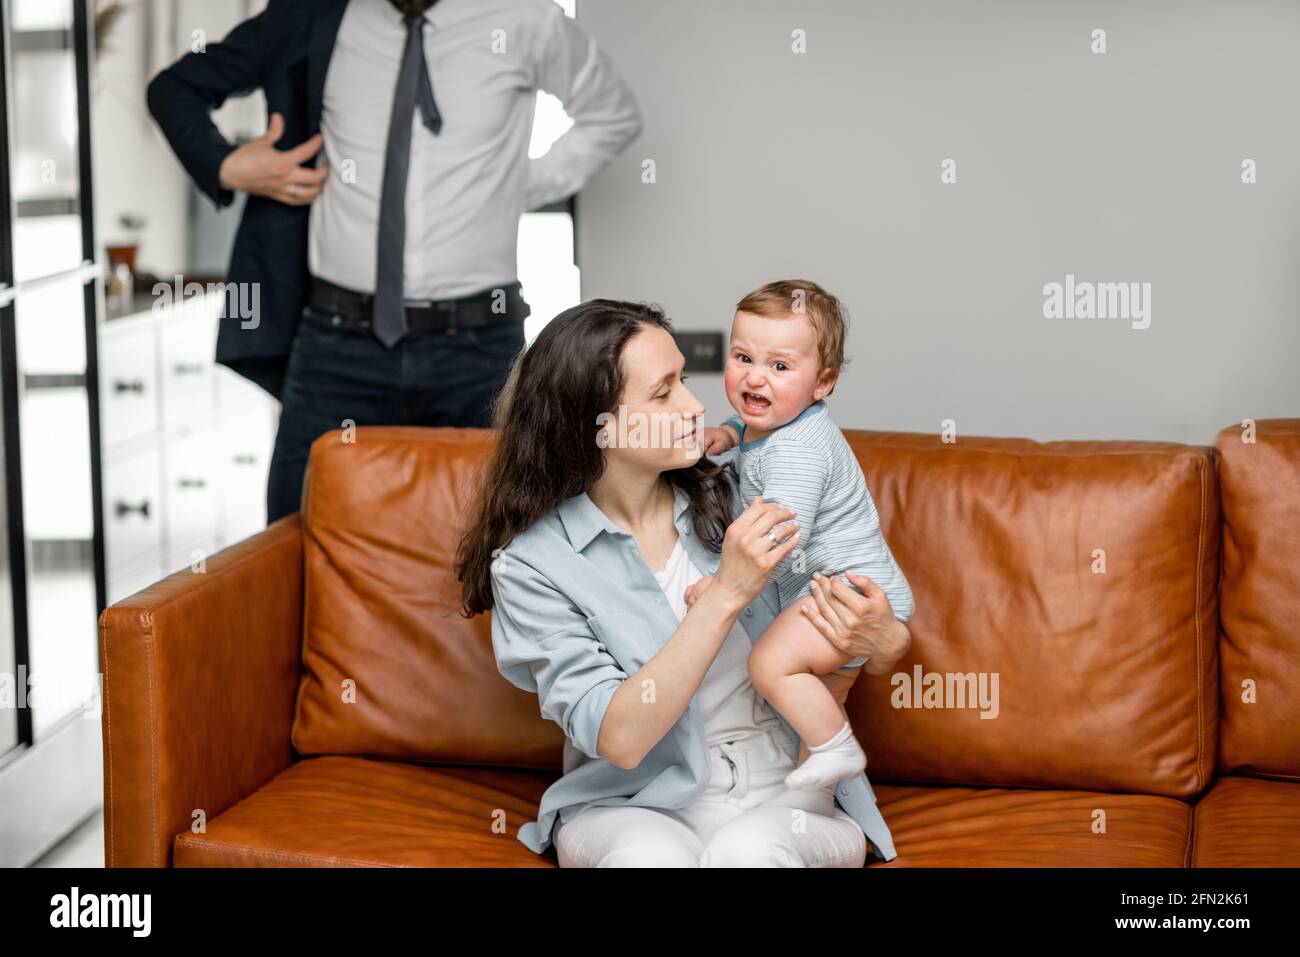 Junge Mutter sitzt mit neugeborenen Sohn auf dem Sofa und kümmern oder spielen mit einem Kind, während Vater und Mann zur Arbeit gehen und sagen Auf Wiedersehen. Stockfoto